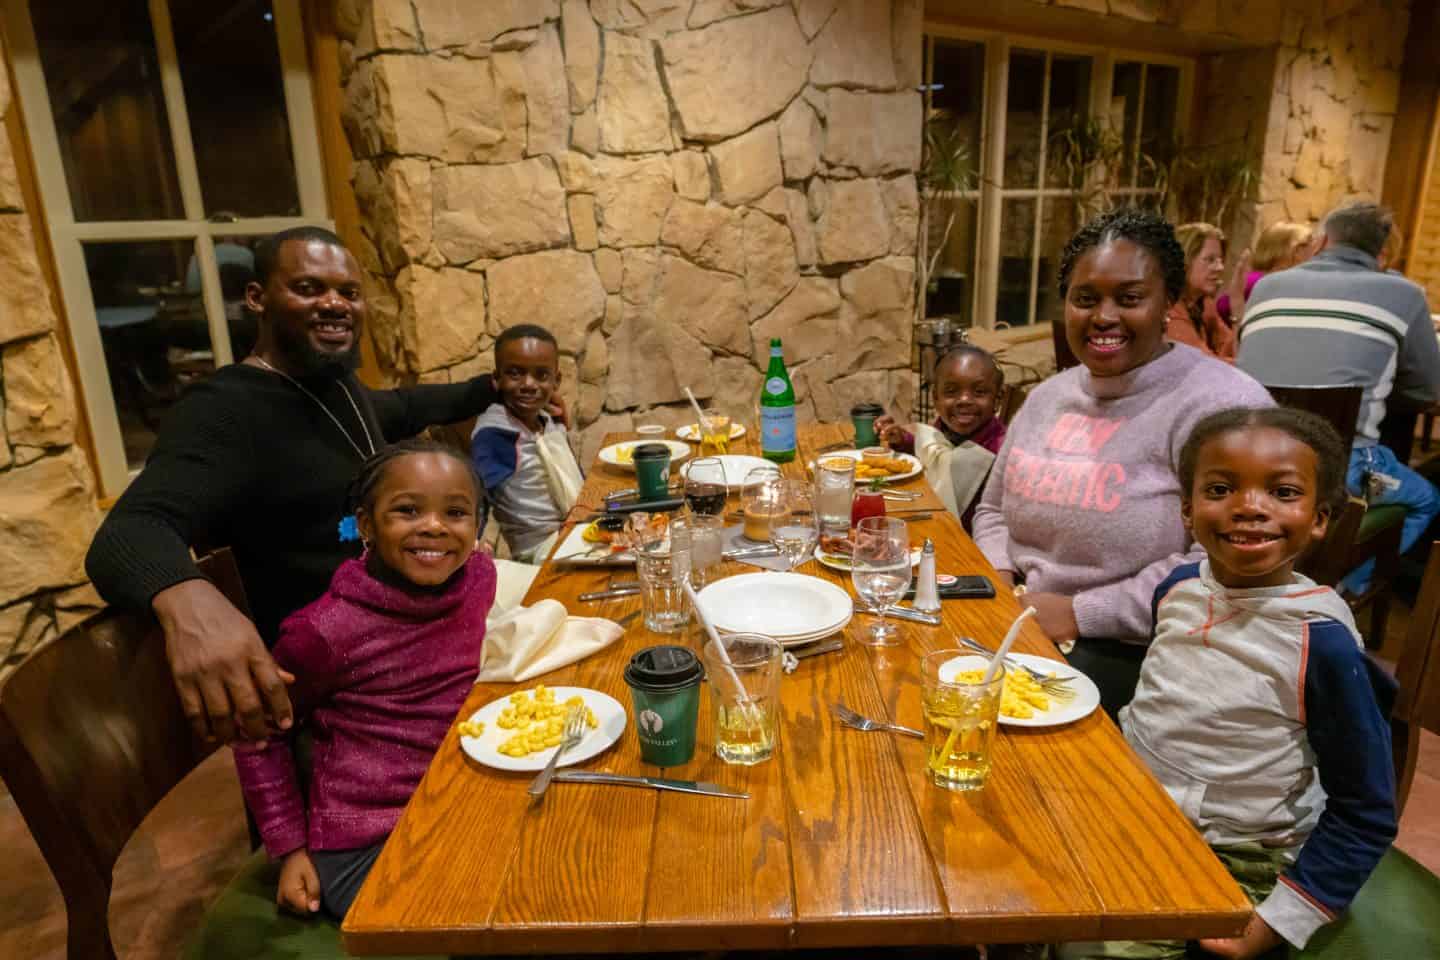 black family at dinner at deer valley ski resort utah